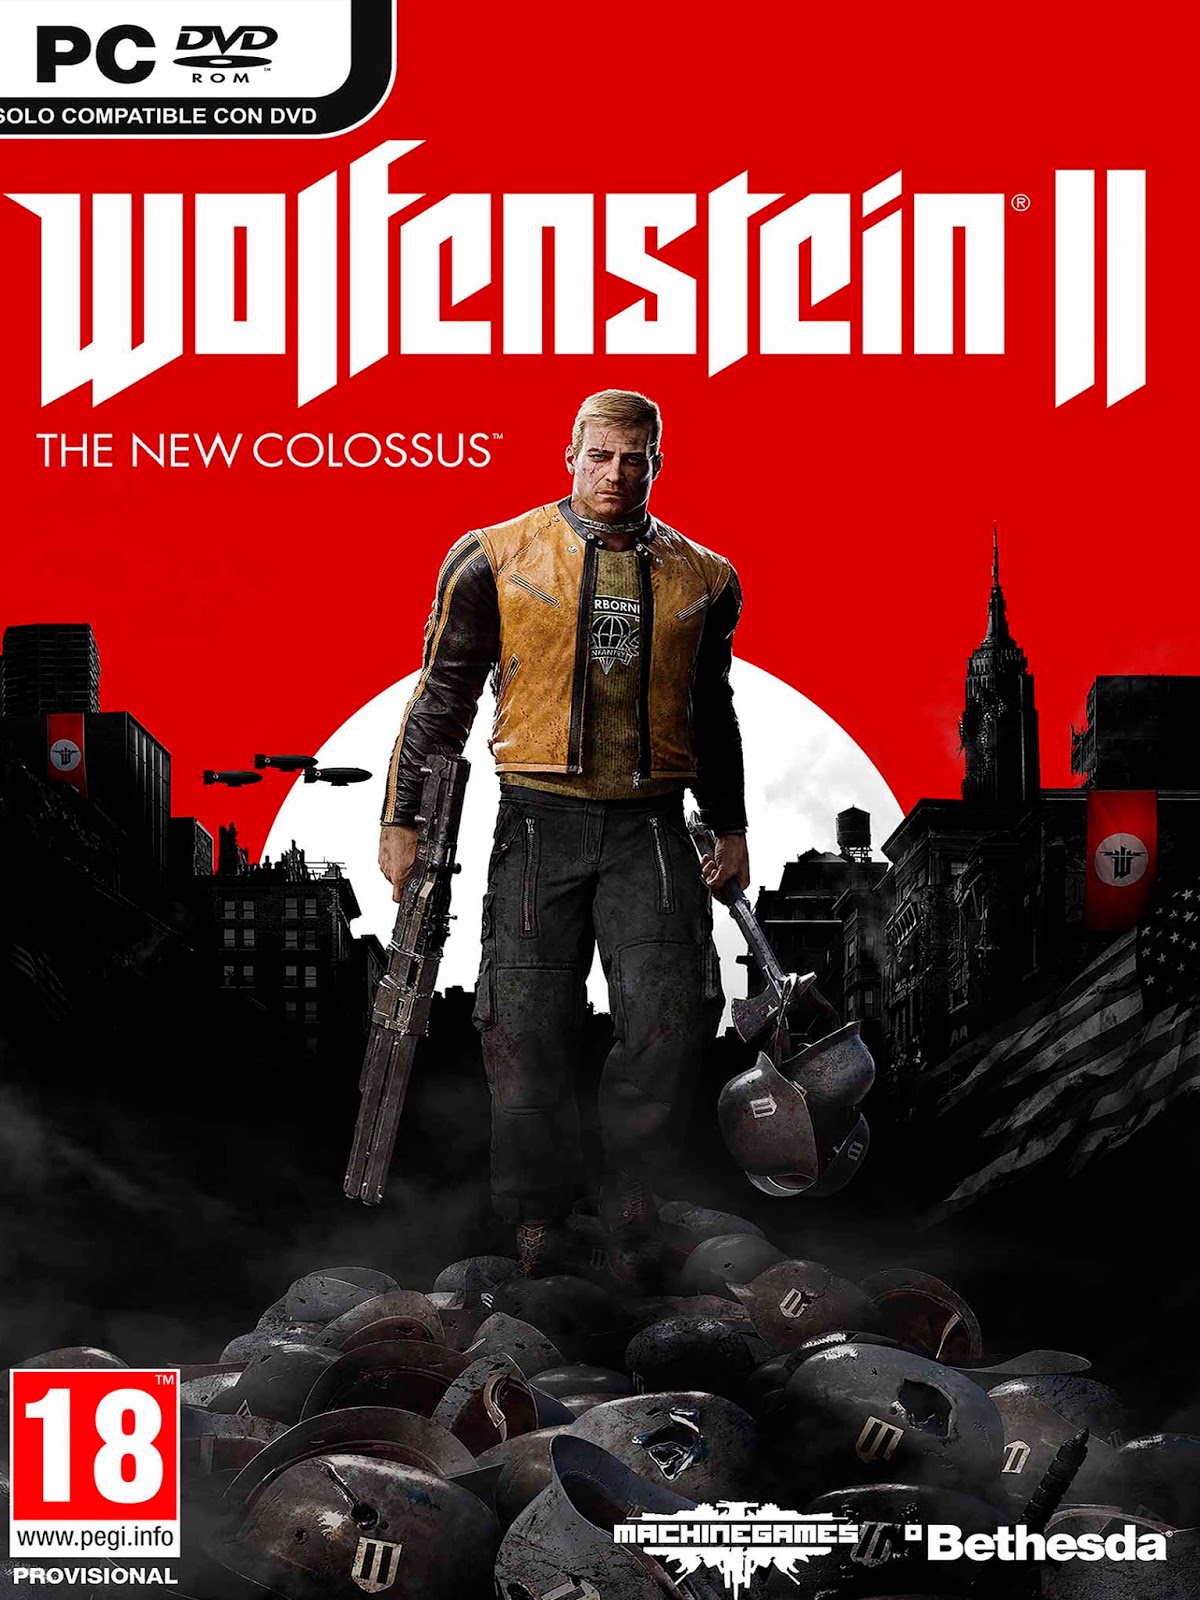 Wolfenstein the New Colossus системные требования. Вольфенштайн 2 системные требования. Wolfenstein II the New Colossus системные требования на ПК. Wolfenstein 2 the Colossus системные требования. New colossus читы